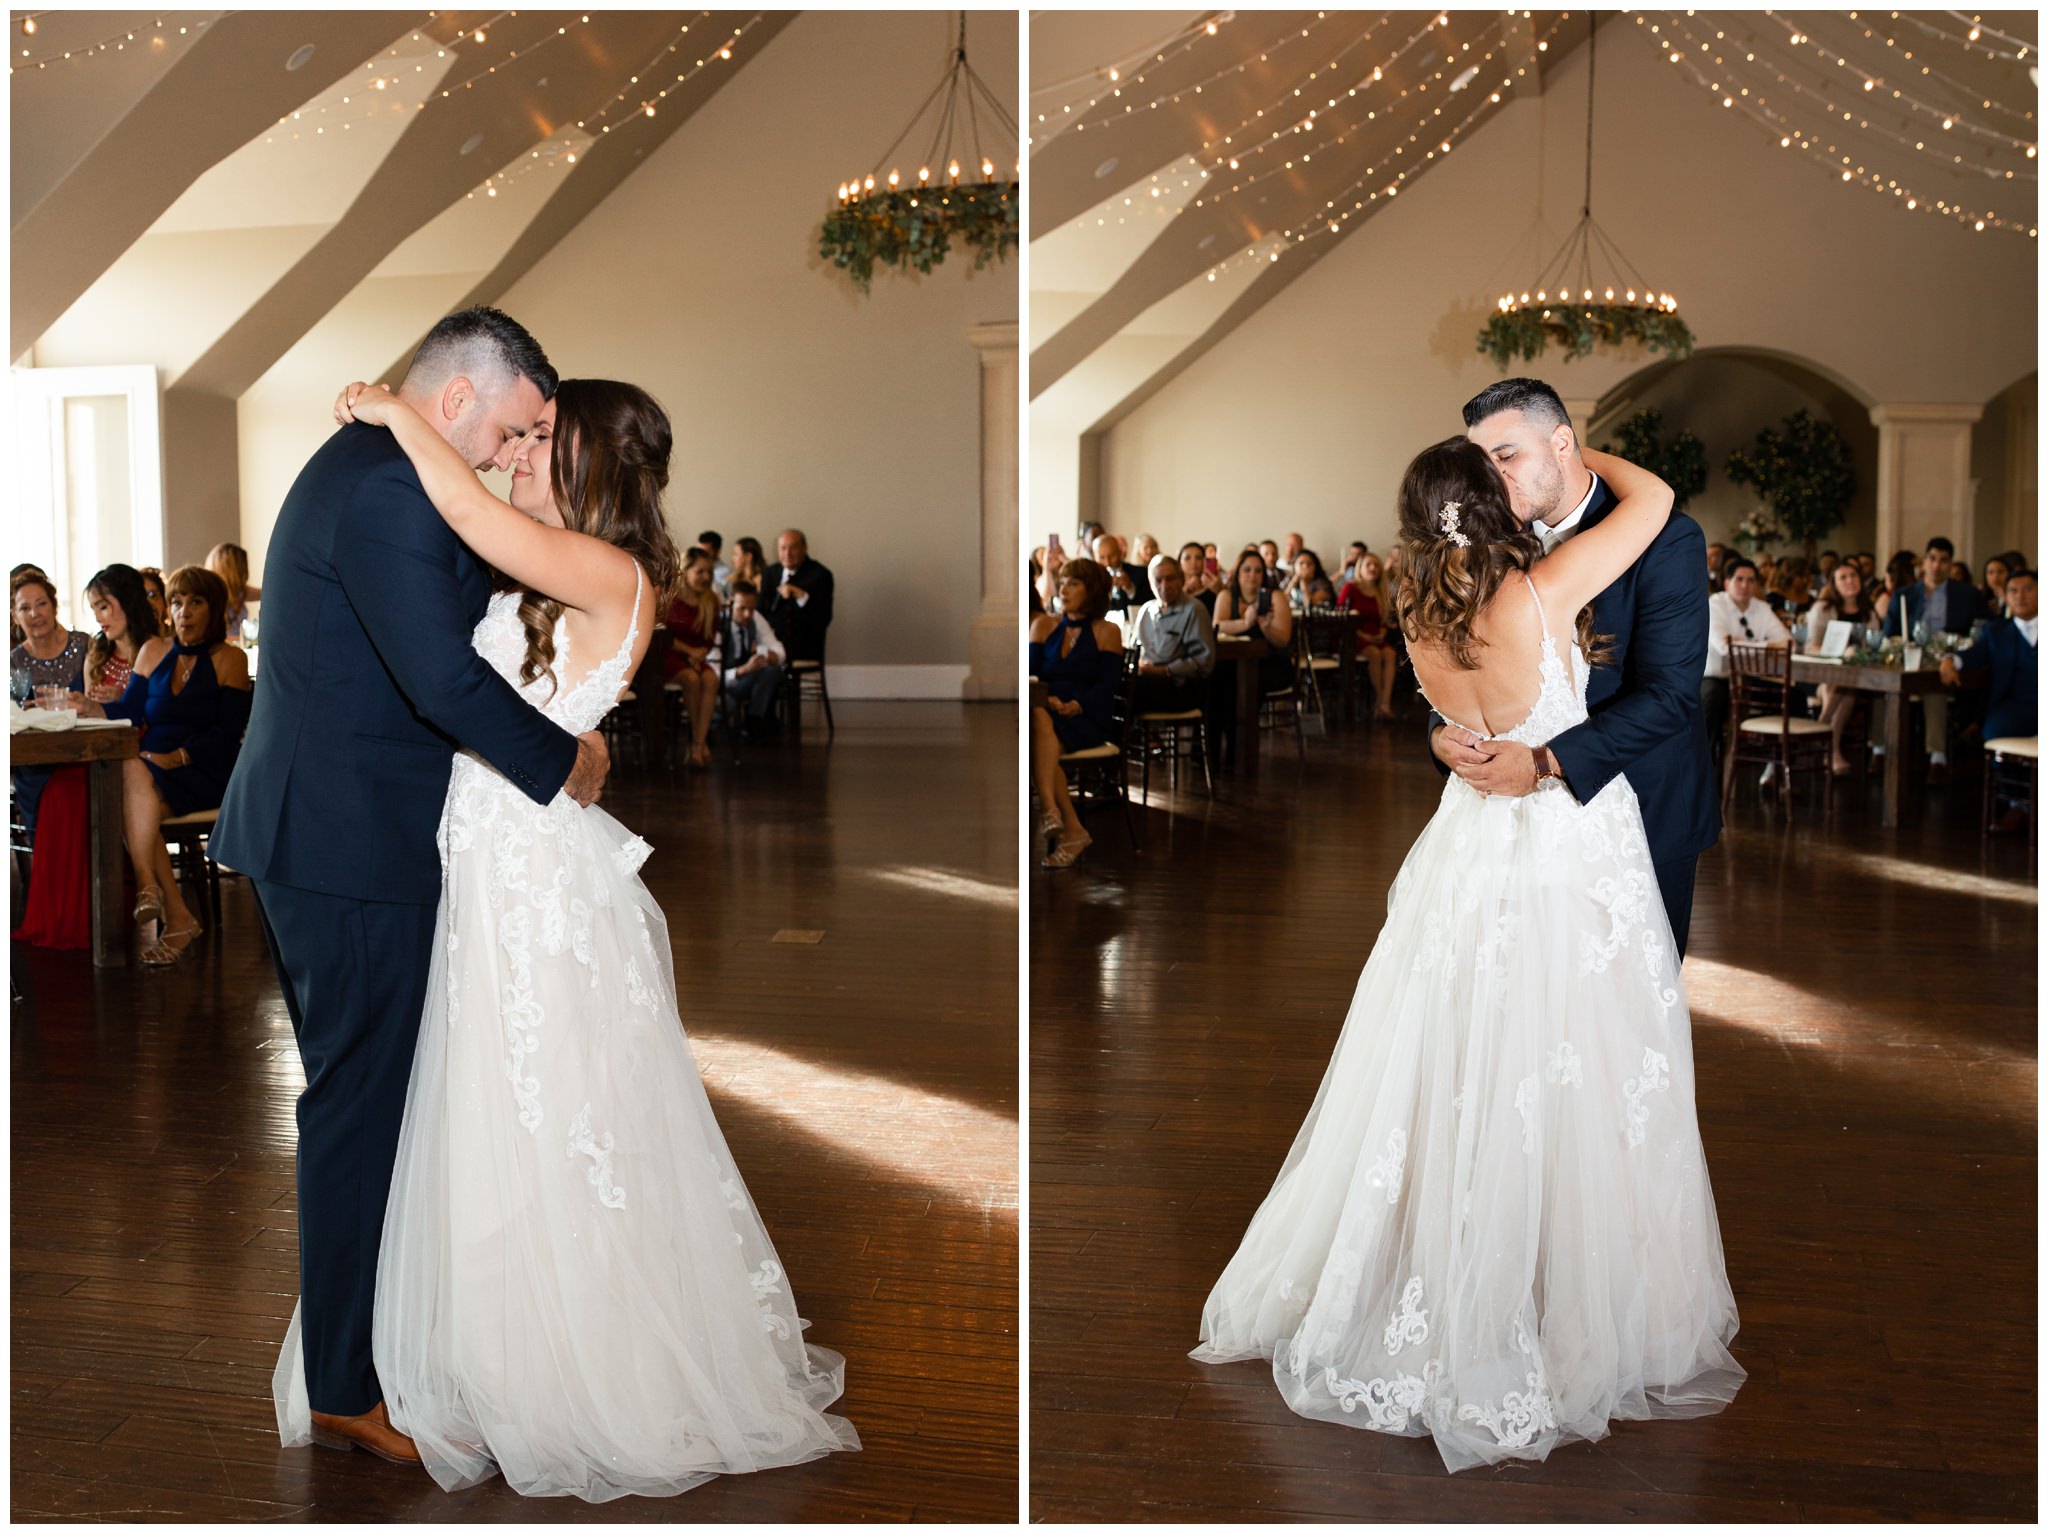 Bride and Groom dancing at their wedding in Utah